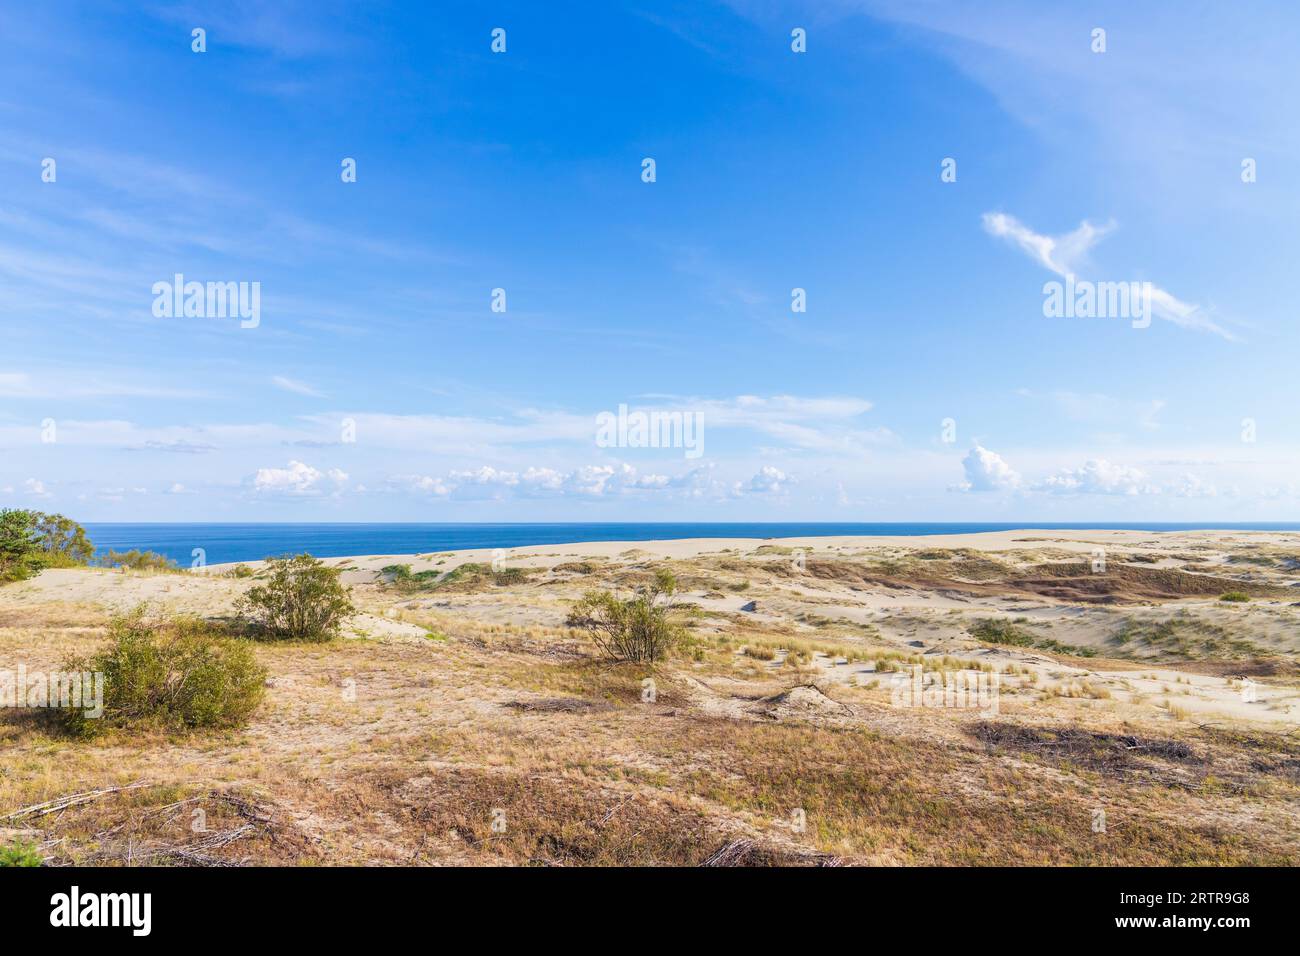 Curonian Spit, foto di paesaggi naturali. Le dune costiere sono sotto il cielo nuvoloso blu in una giornata di sole in estate, nell'Oblast' di Kaliningrad, in Russia Foto Stock